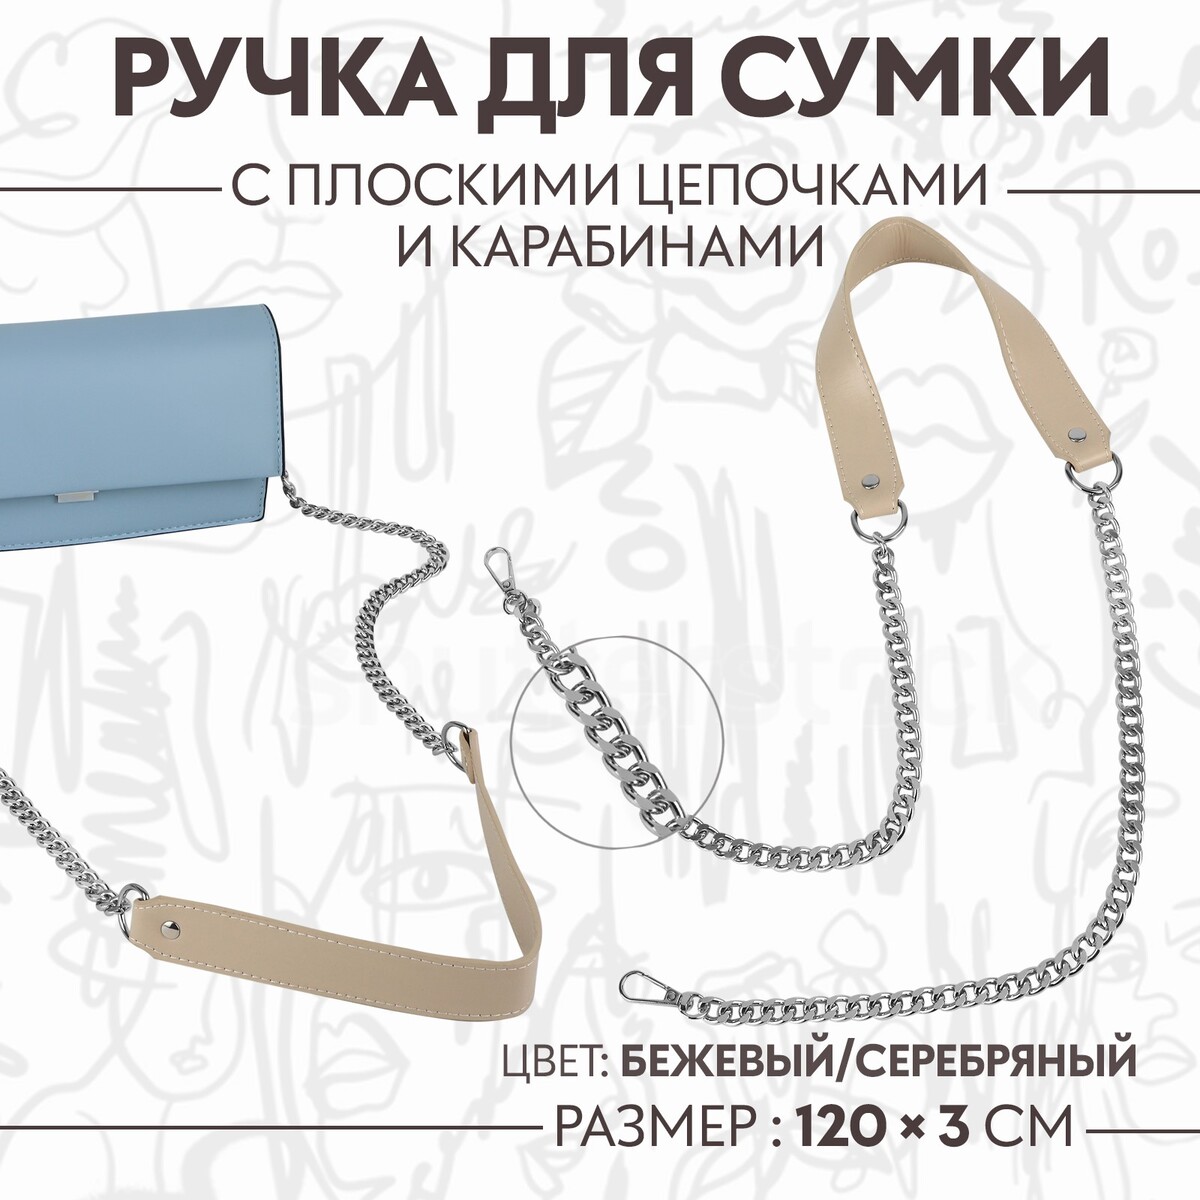 Ручка для сумки, с плоскими цепочками и карабинами, 120 × 3 см, цвет бежевый/серебряный ручка для сумки с цепочками и карабинами 120 × 1 8 см